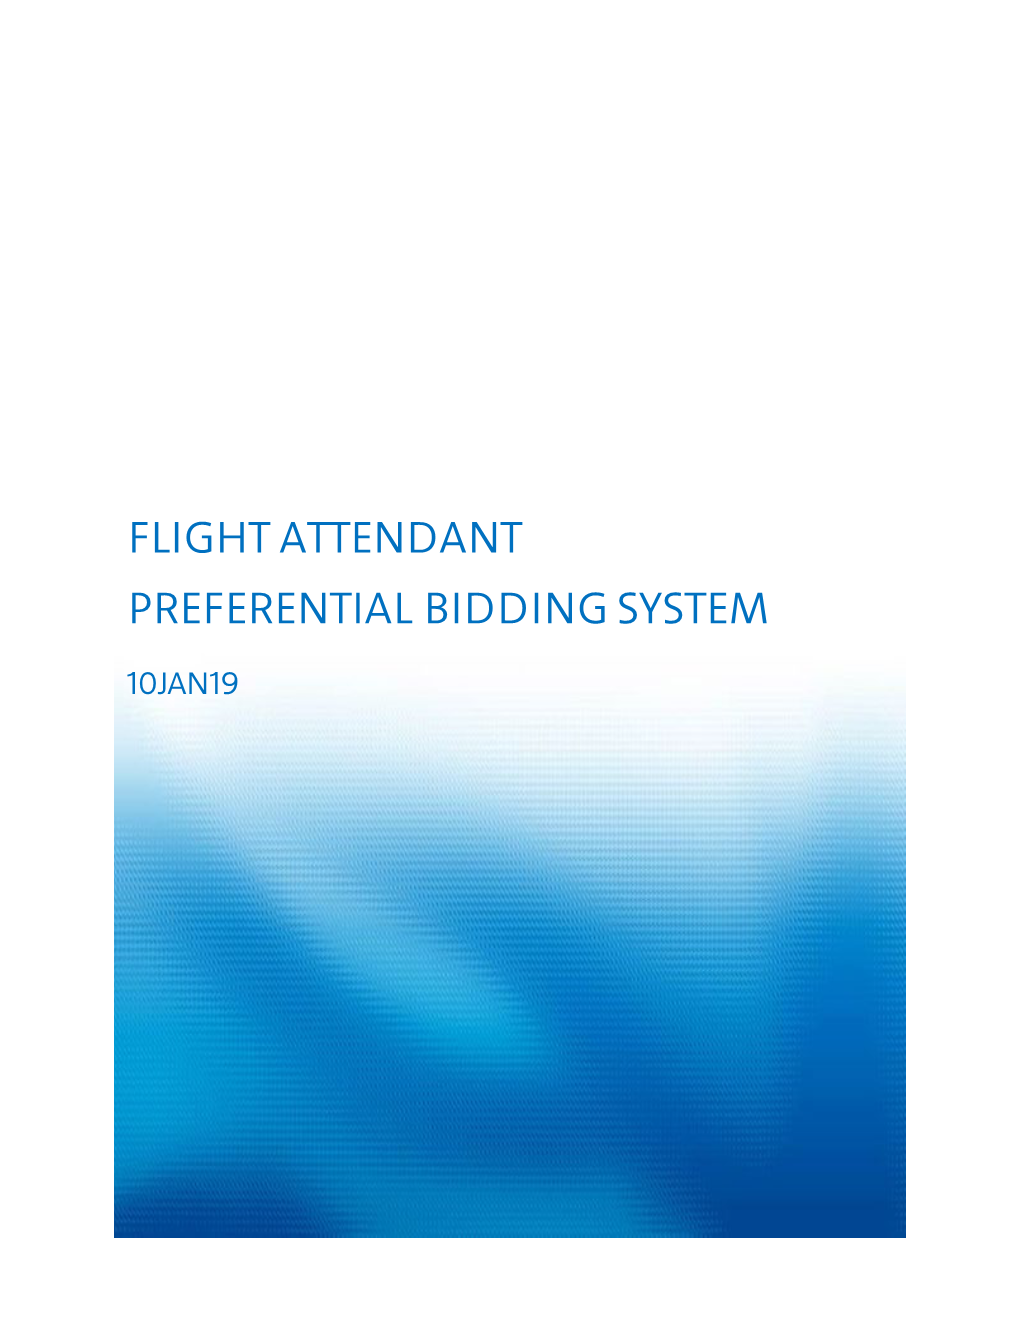 Flight Attendant Preferential Bidding System